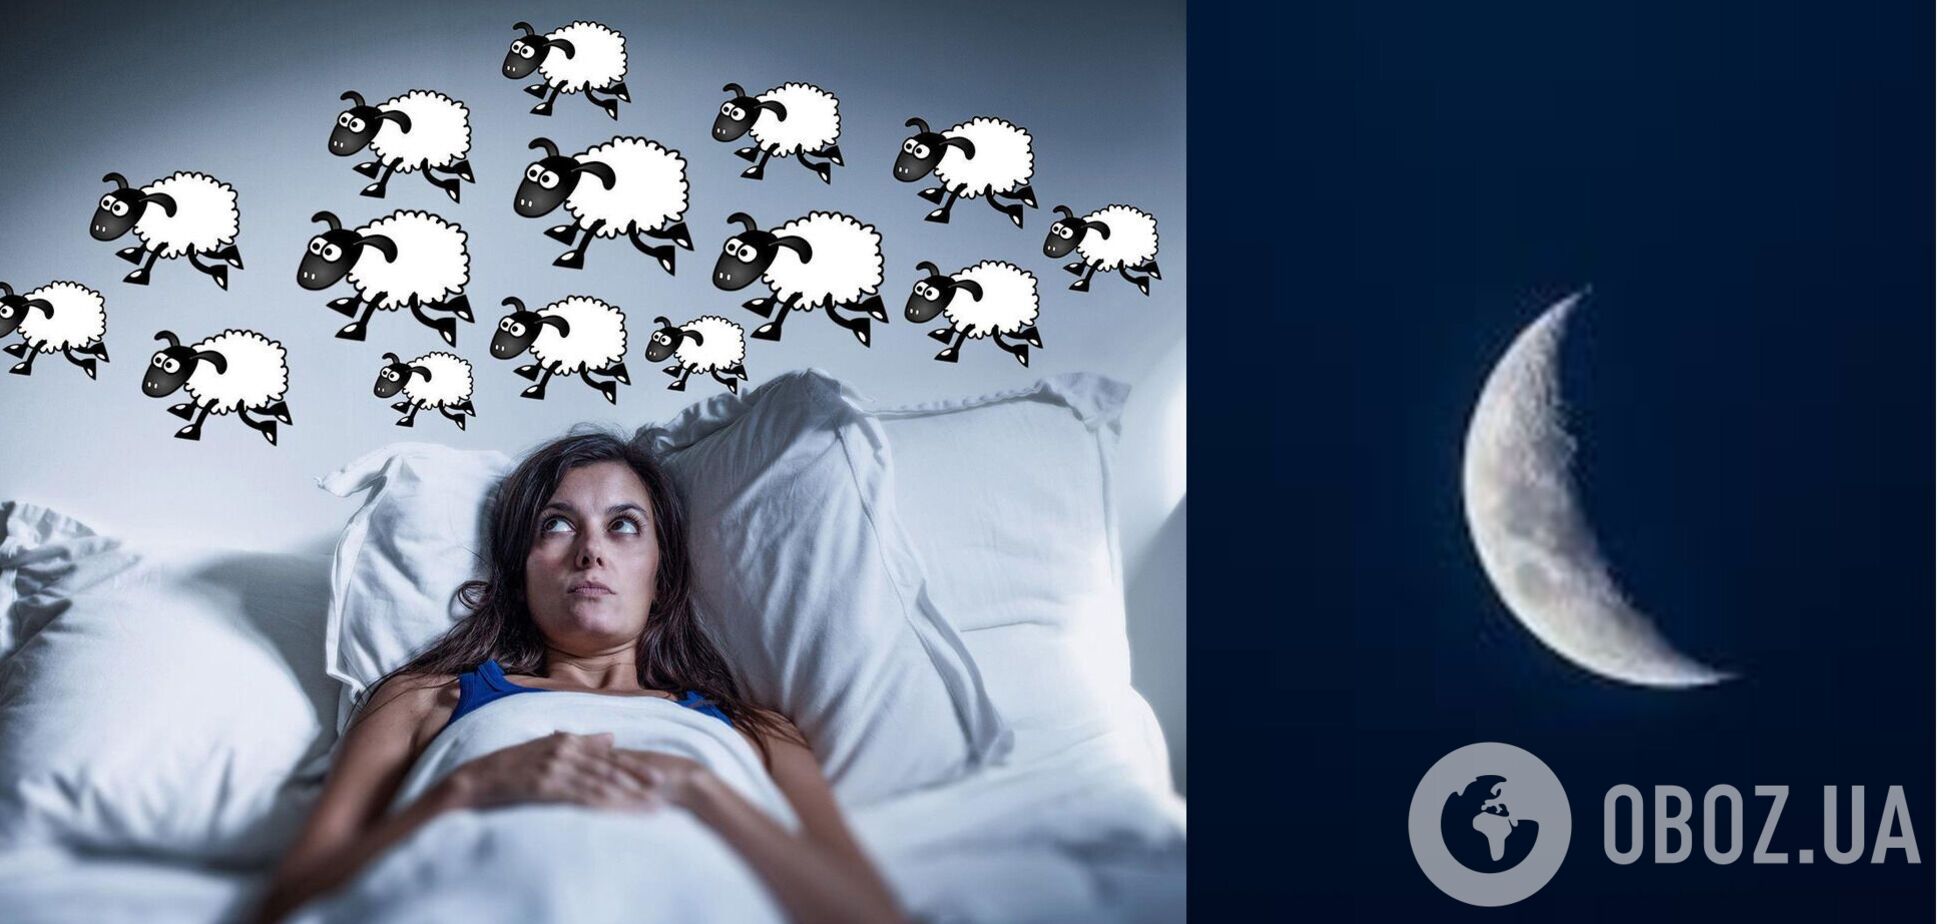 Вчені заявили, що місячні цикли можуть впливати на сон людей, і розповіли, хто частіше страждає від безсоння